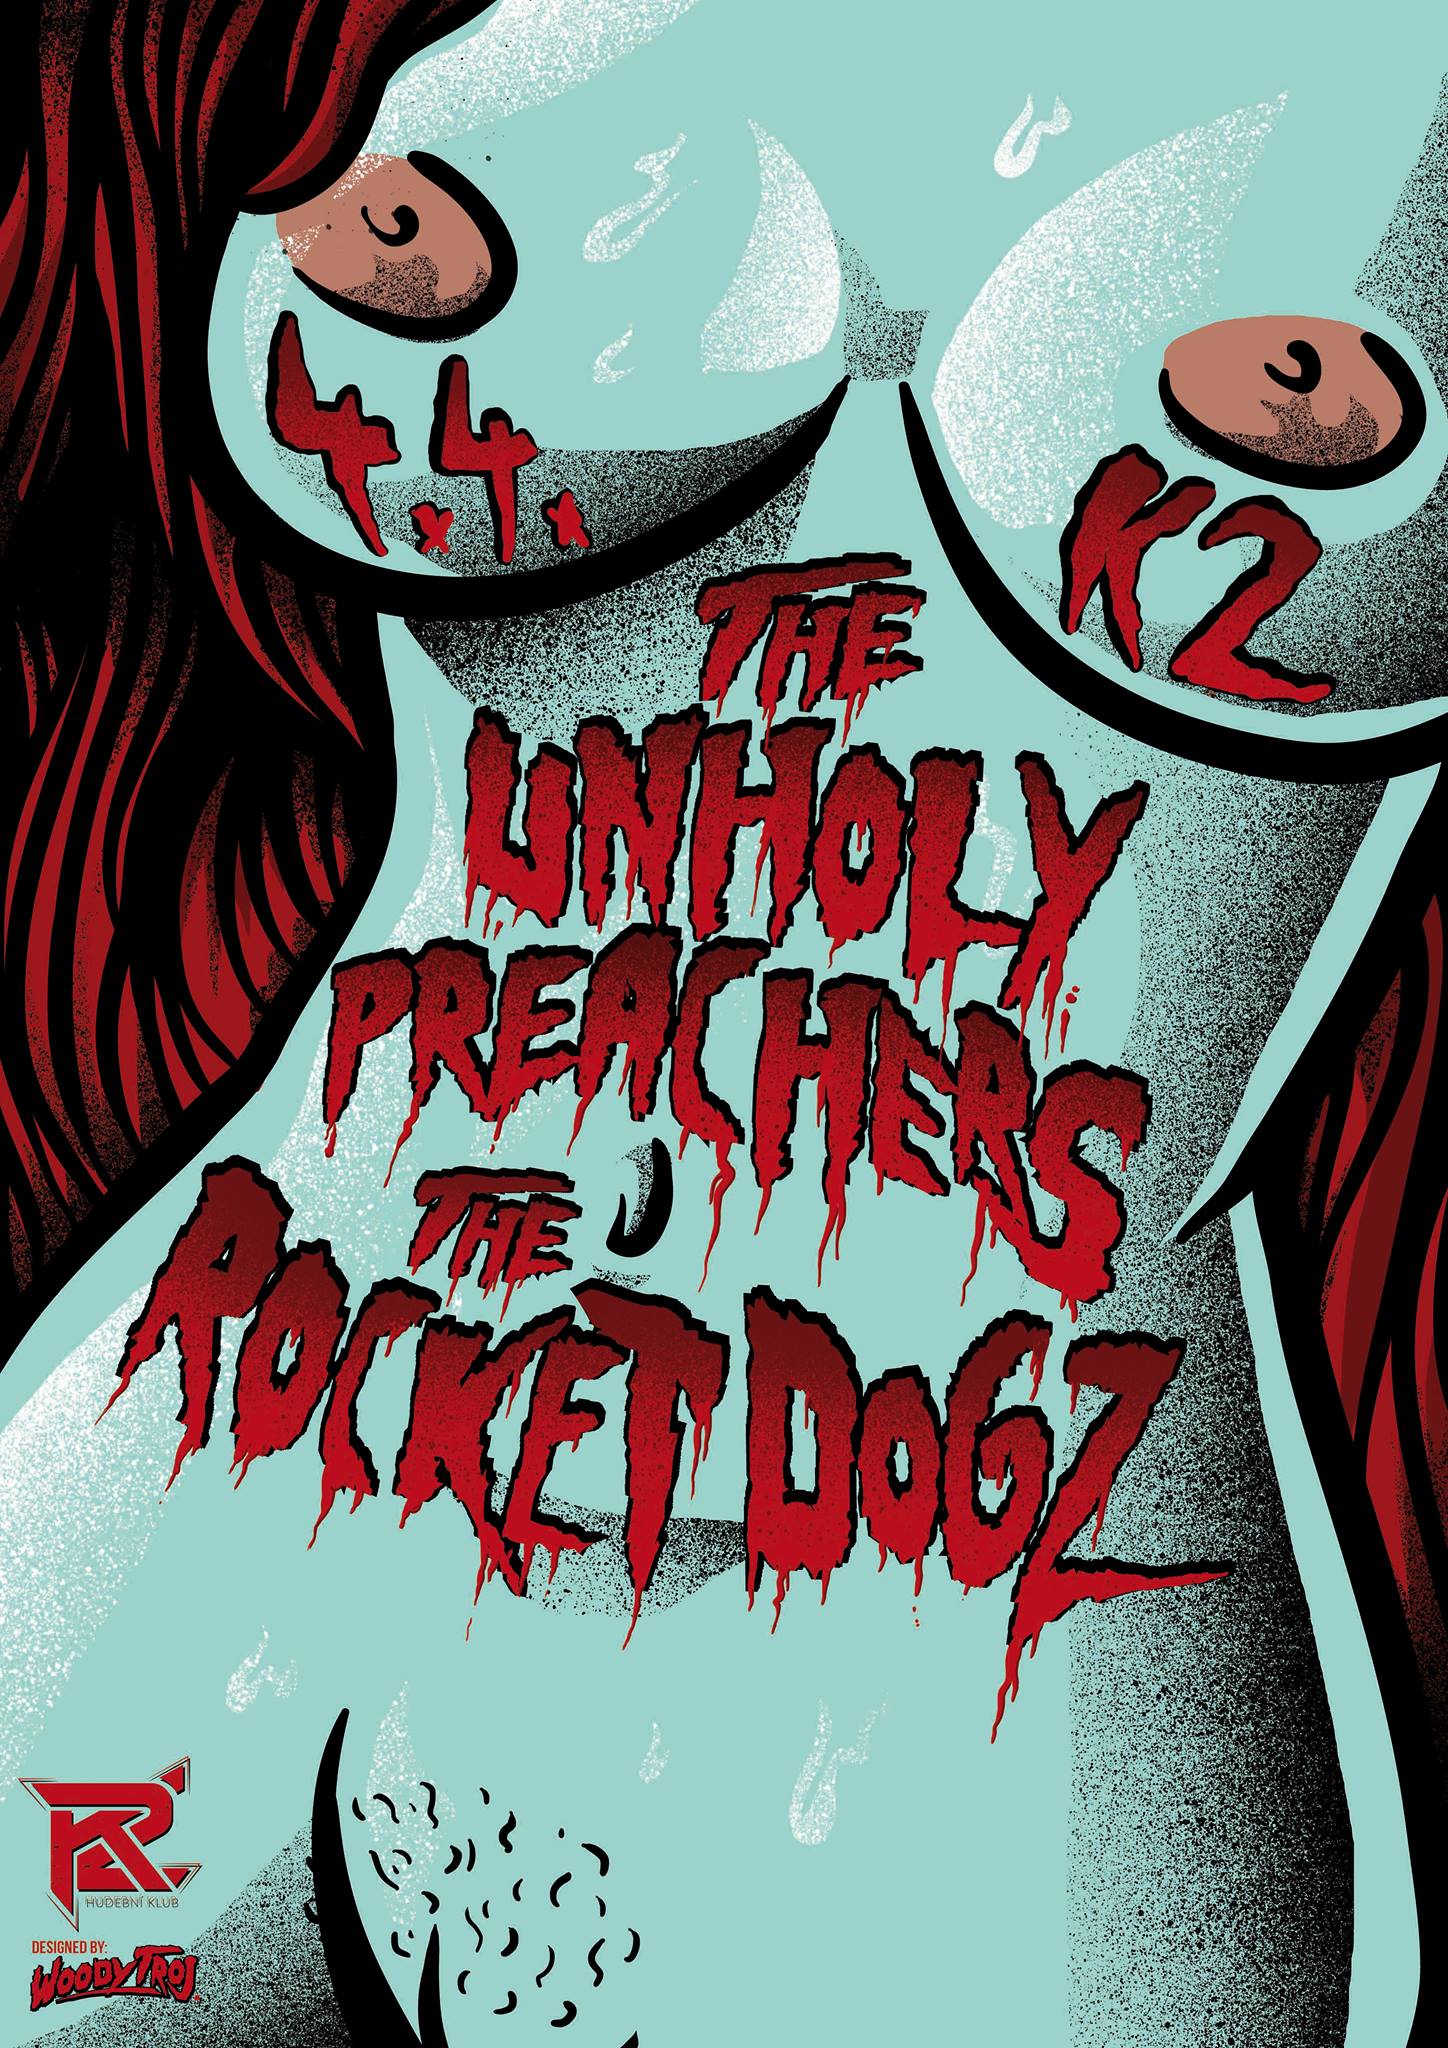 The Unholy Preachers / The Rocket Dogz